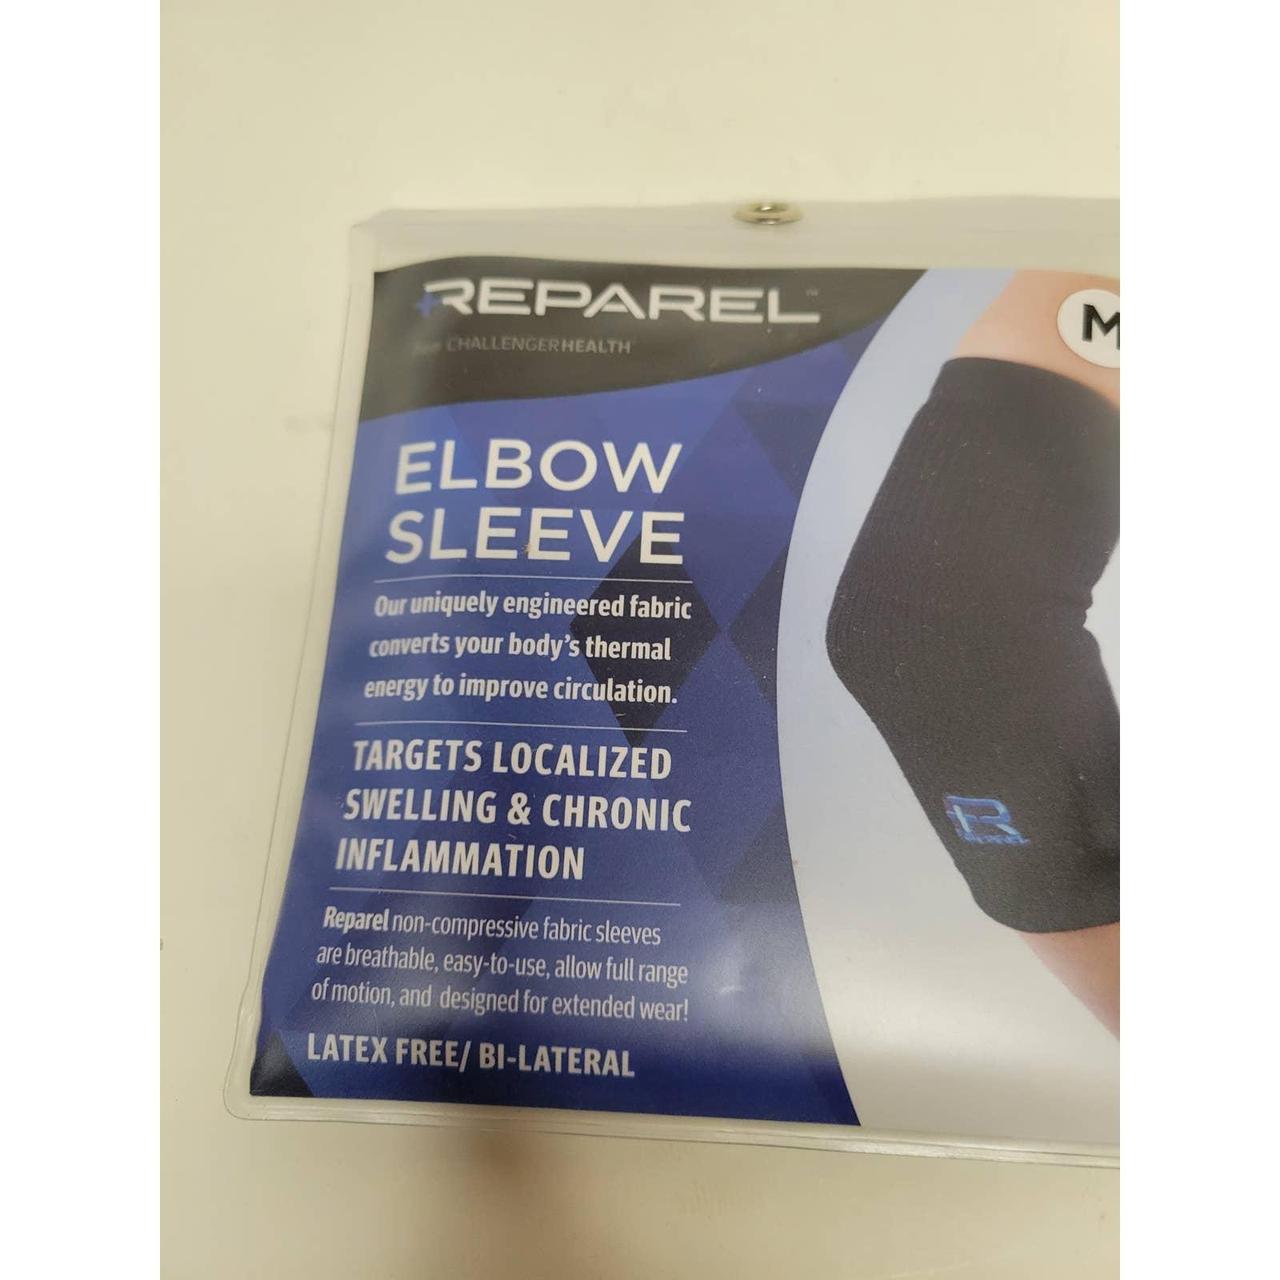 NEW IN BOX Reparel elbow sleeve. Medium Targets - Depop